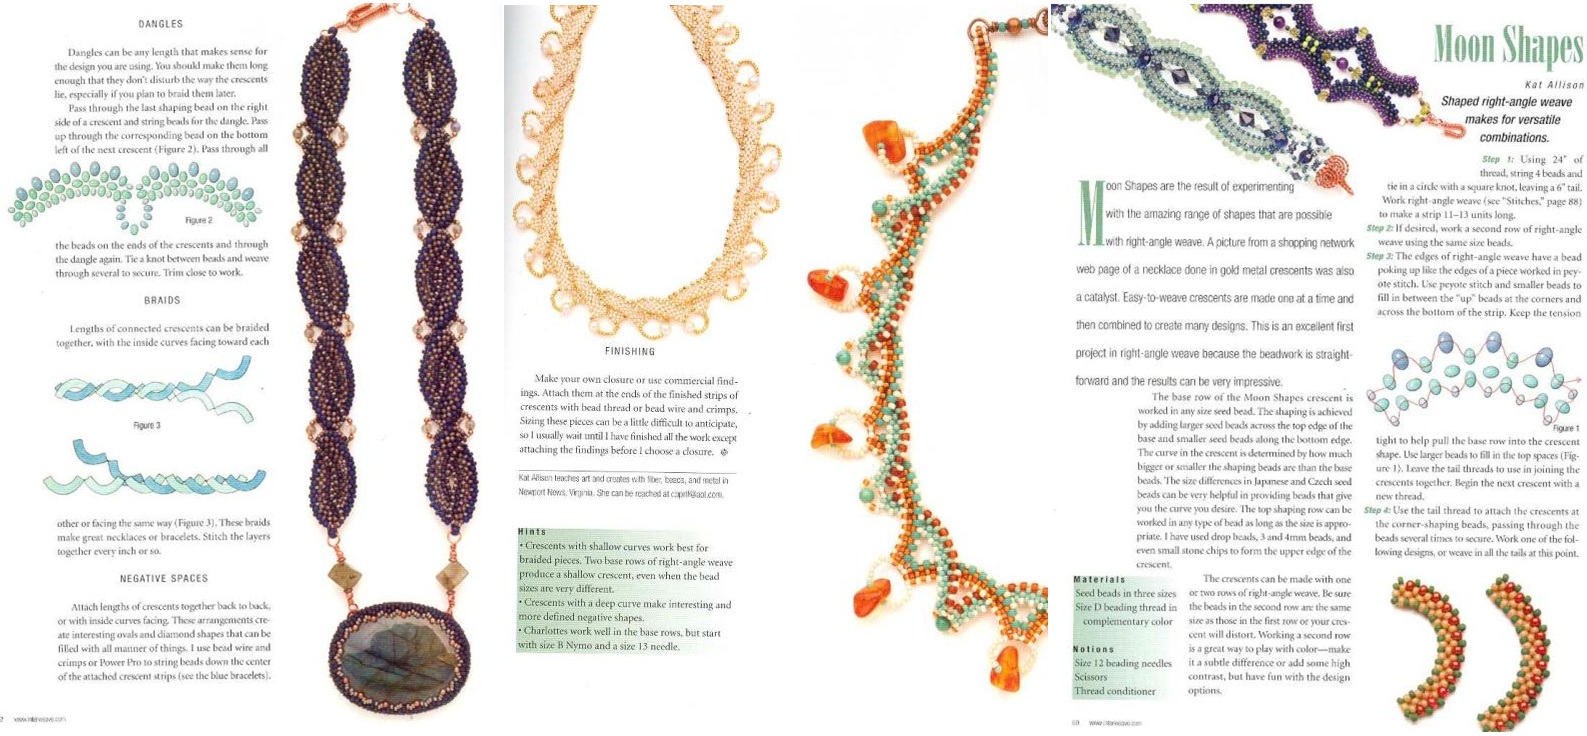 Интересные 9 идей по созданию роскошного ожерелья из бисера и бусин